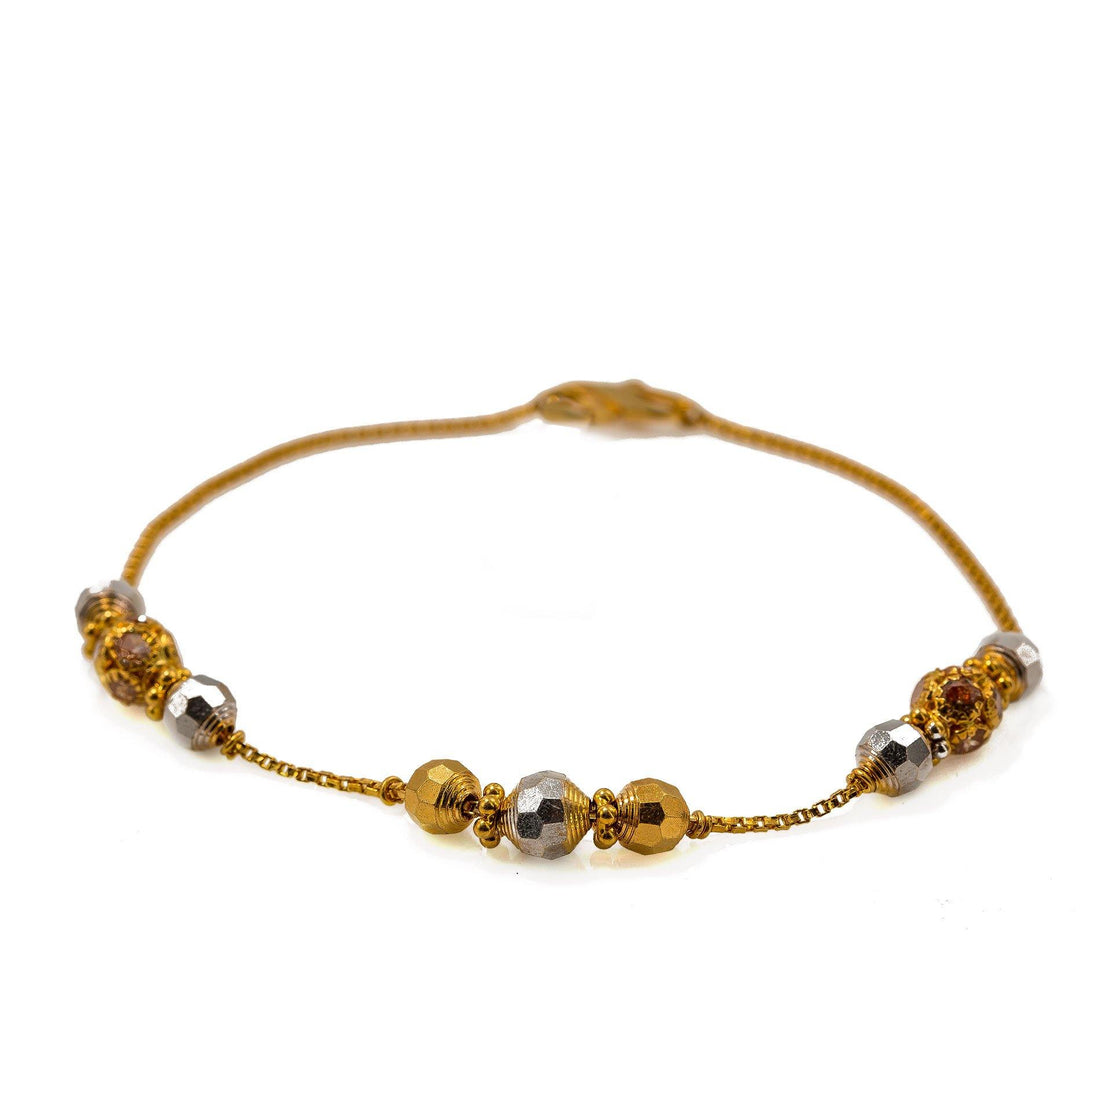 22ct Indian Gold Baby Bracelet - £255.00.00 (SKU:32707_2020072717484746)